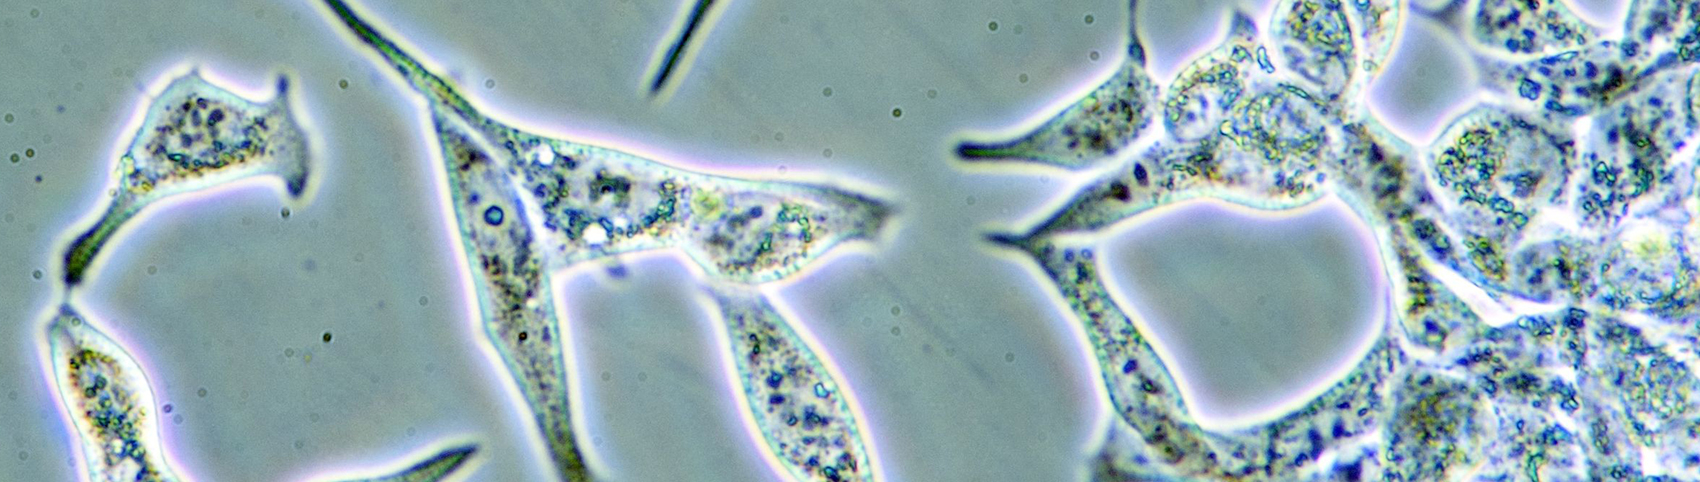 顕微鏡で見た細胞の画像